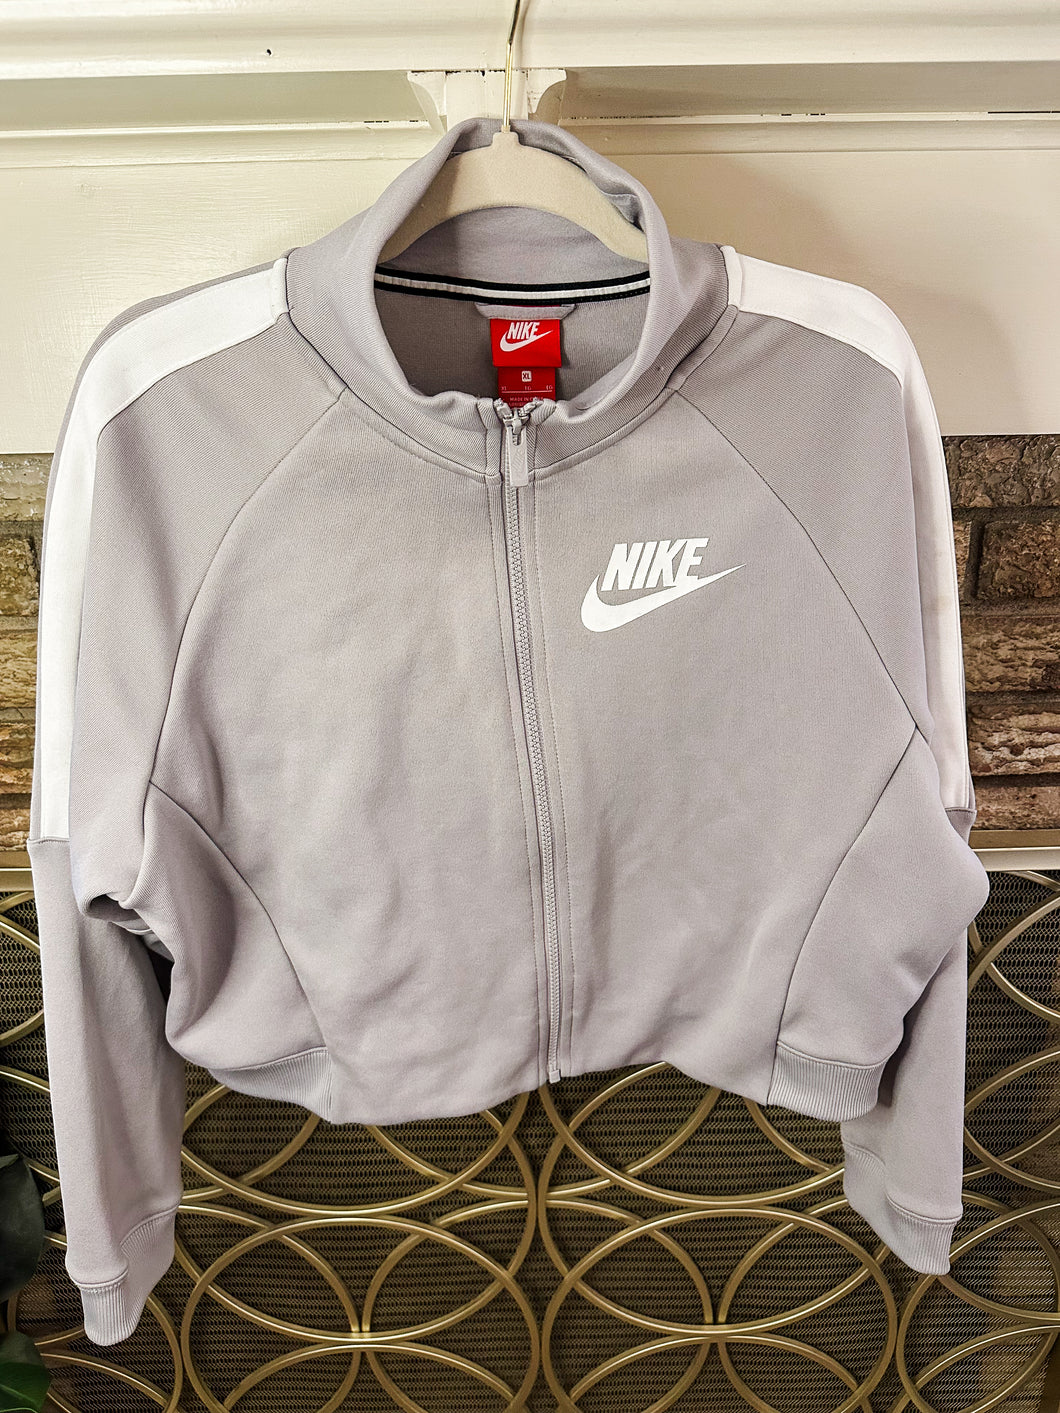 Cropped Nike jacket